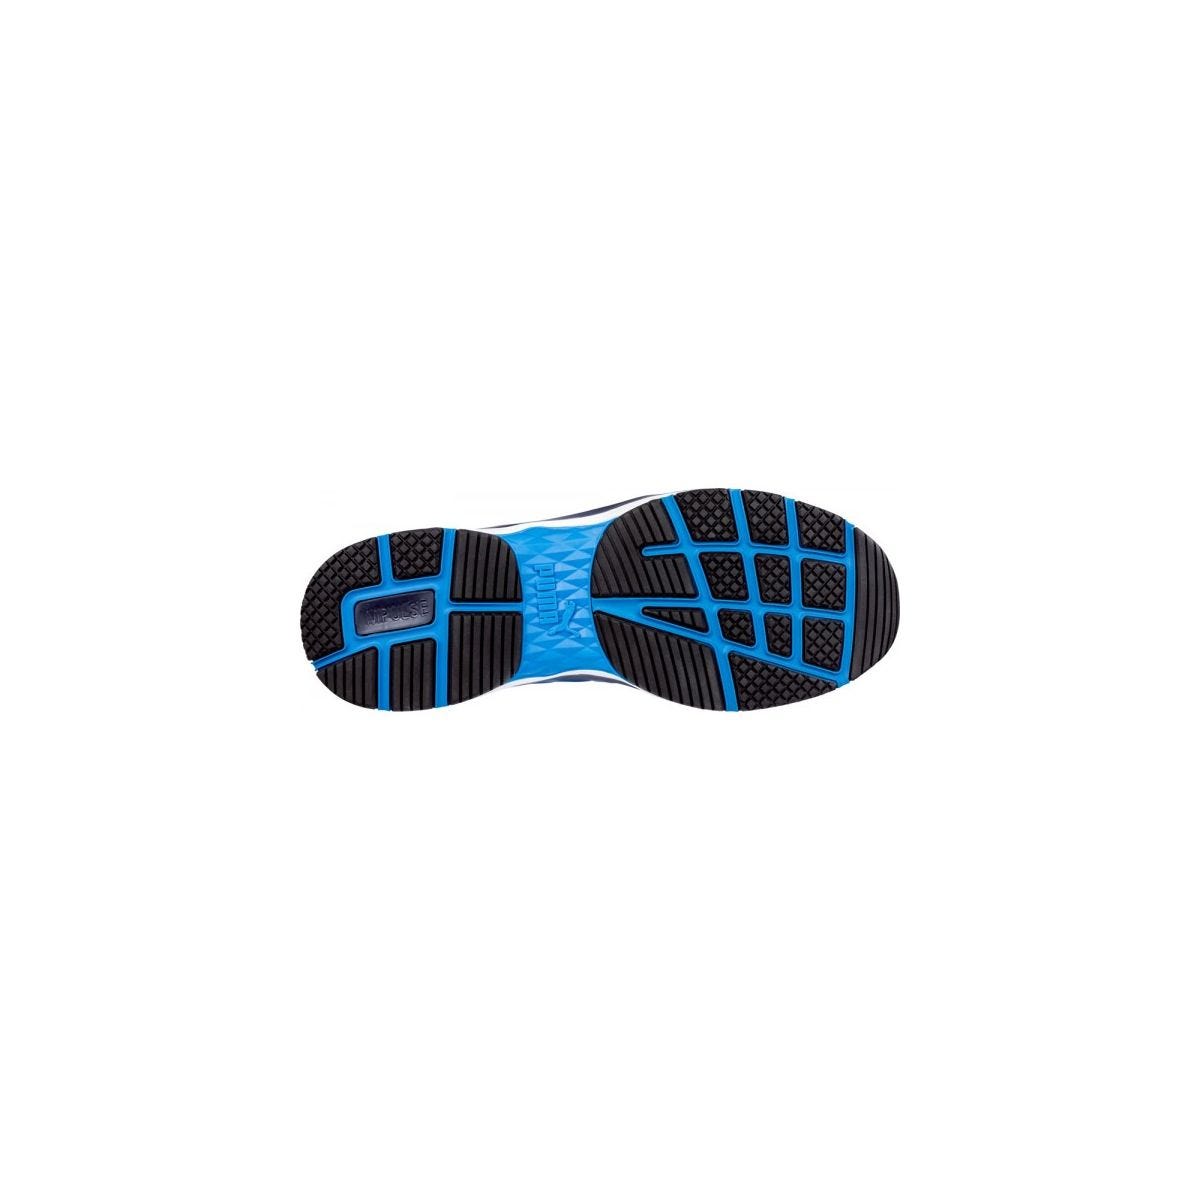 Chaussures de sécurité Velocity 2.0 Bleu Low S1P - Puma - Taille 39 4